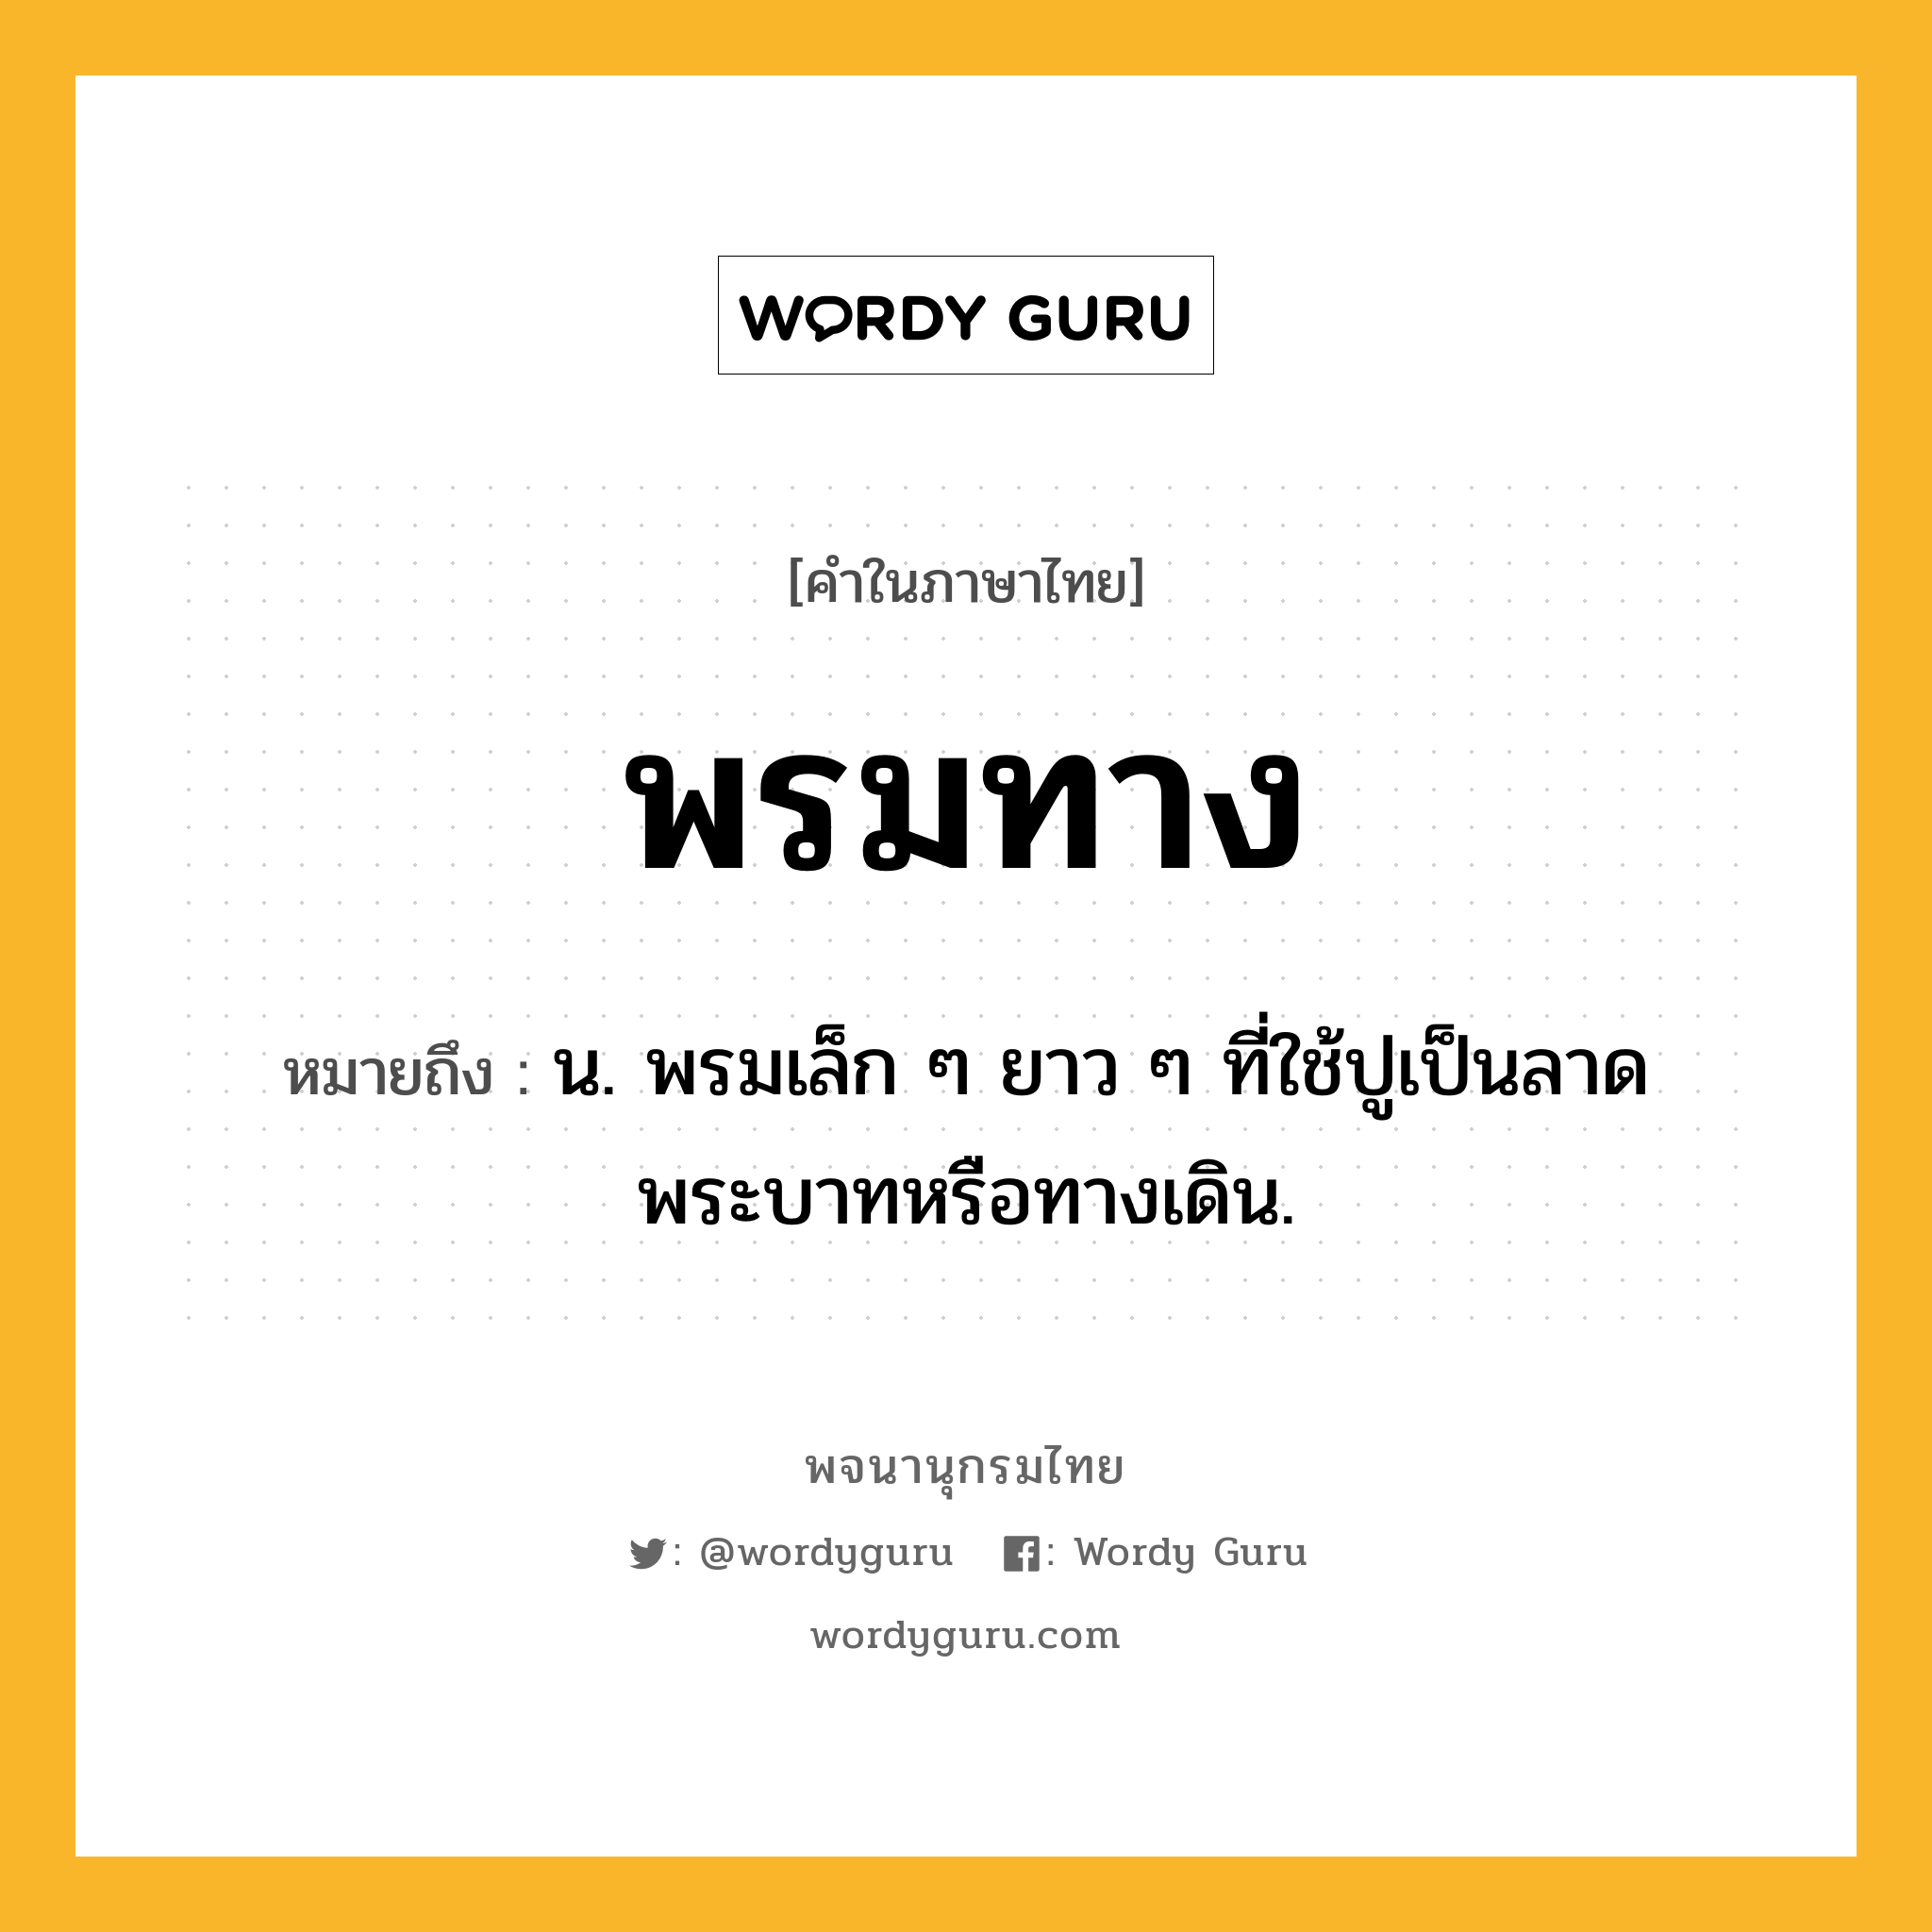 พรมทาง ความหมาย หมายถึงอะไร?, คำในภาษาไทย พรมทาง หมายถึง น. พรมเล็ก ๆ ยาว ๆ ที่ใช้ปูเป็นลาดพระบาทหรือทางเดิน.